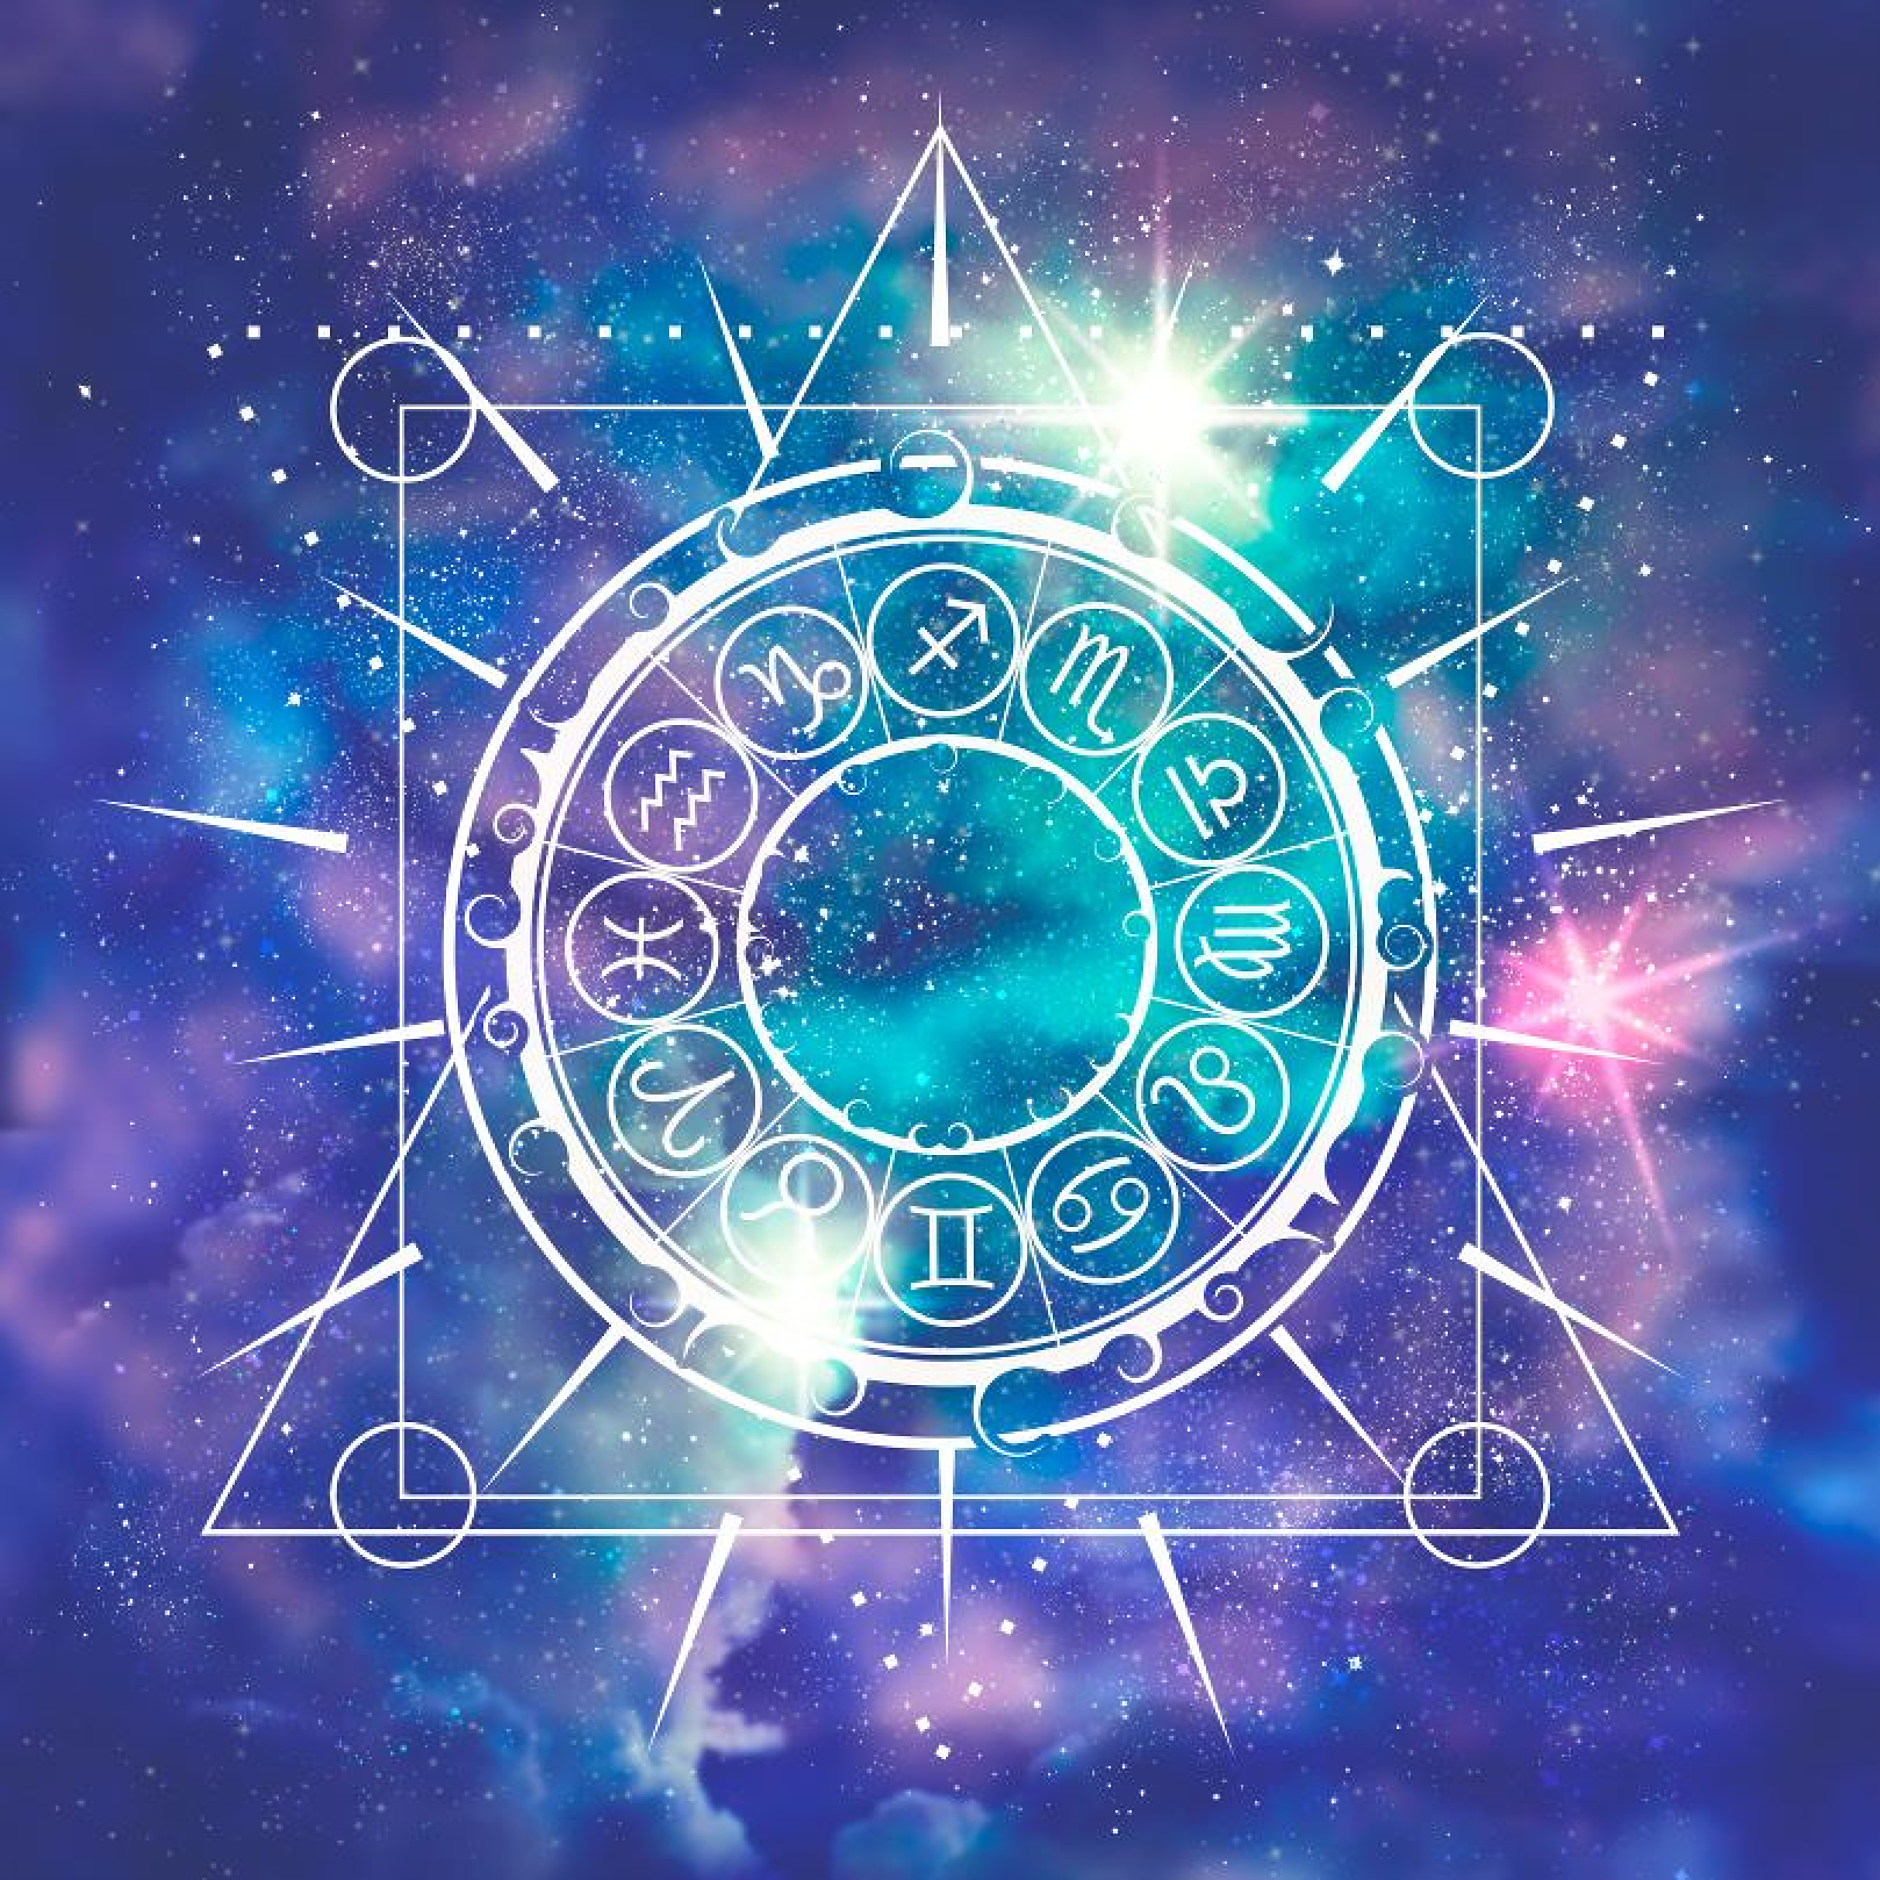 Седмичен хороскоп: Звездите за бизнеса от 29 януари до 4 февруари